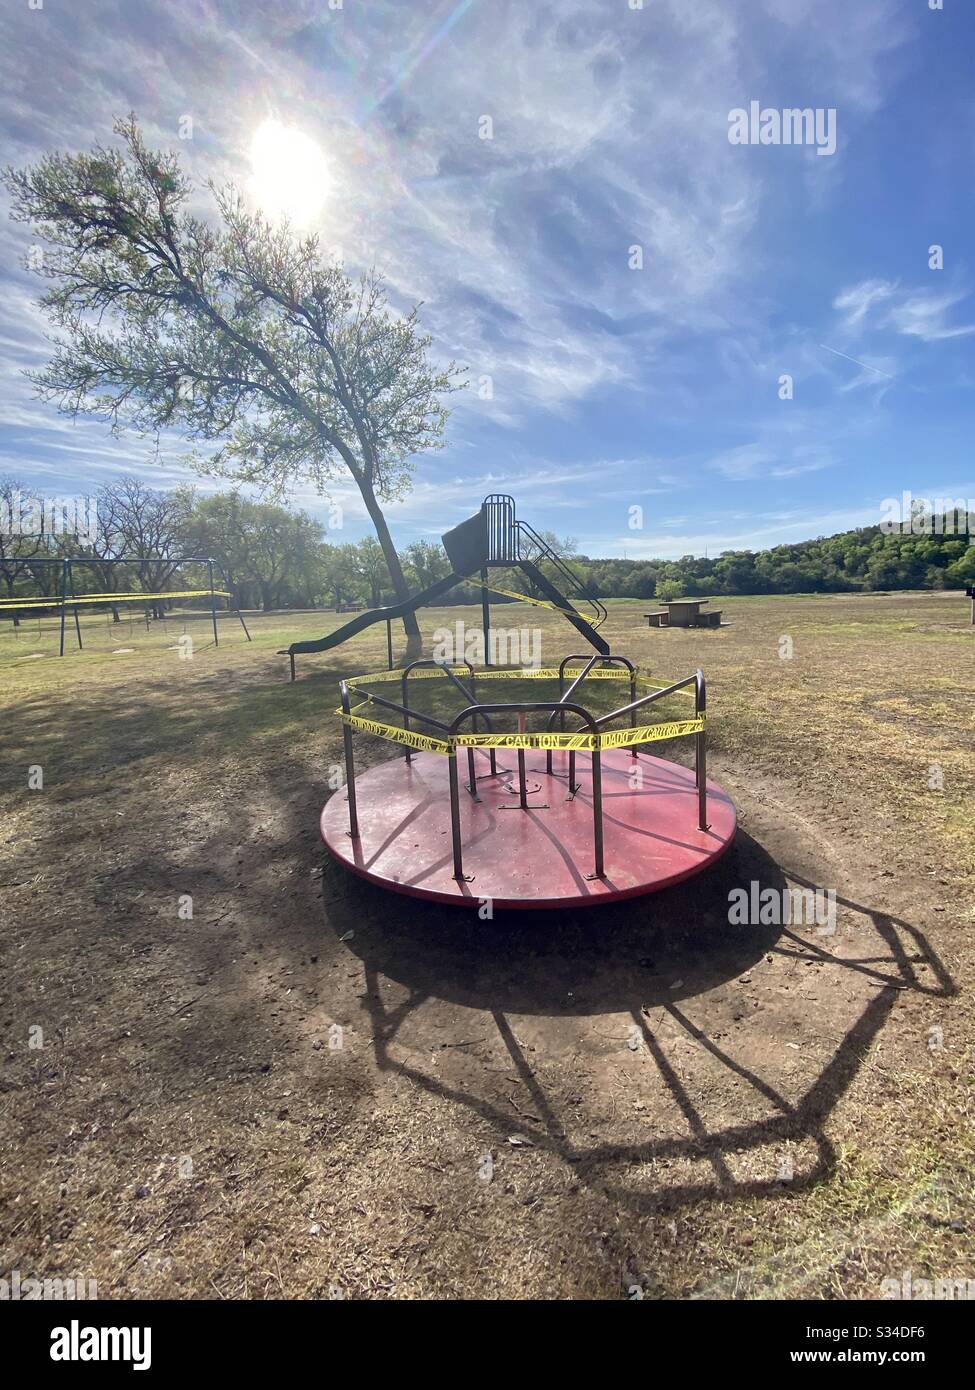 Ein leerer Spielplatz in Texas ist in den Bemühungen, die Menschen während der Corona-Virus-Pandemie zu sammeln und soziale Distanzierungen zu fördern, abgedonnert. Stockfoto